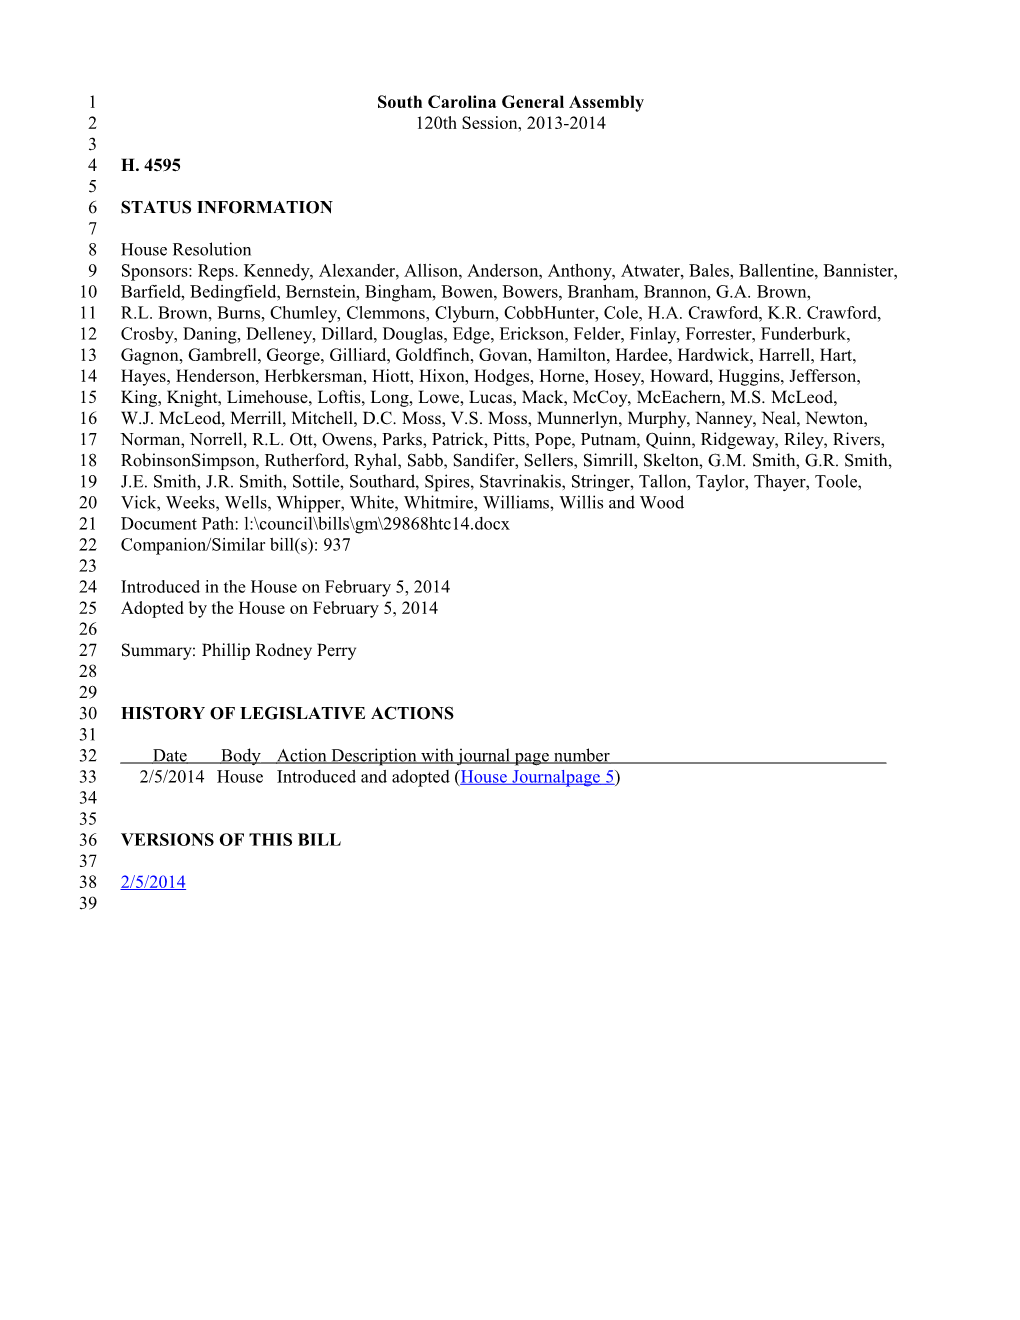 2013-2014 Bill 4595: Phillip Rodney Perry - South Carolina Legislature Online